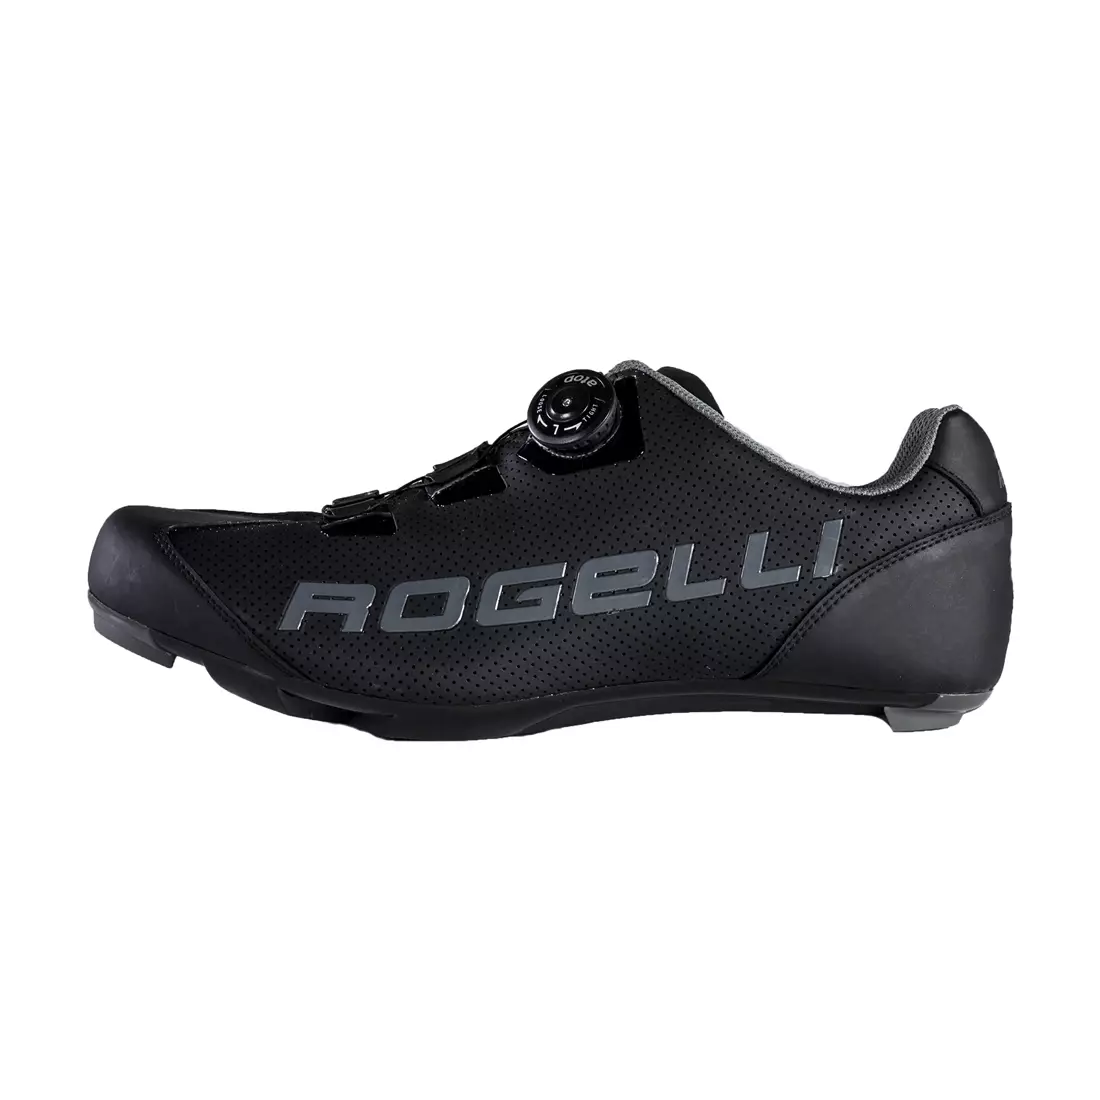 ROGELLI AB-410 cestná cyklistická obuv, čierna